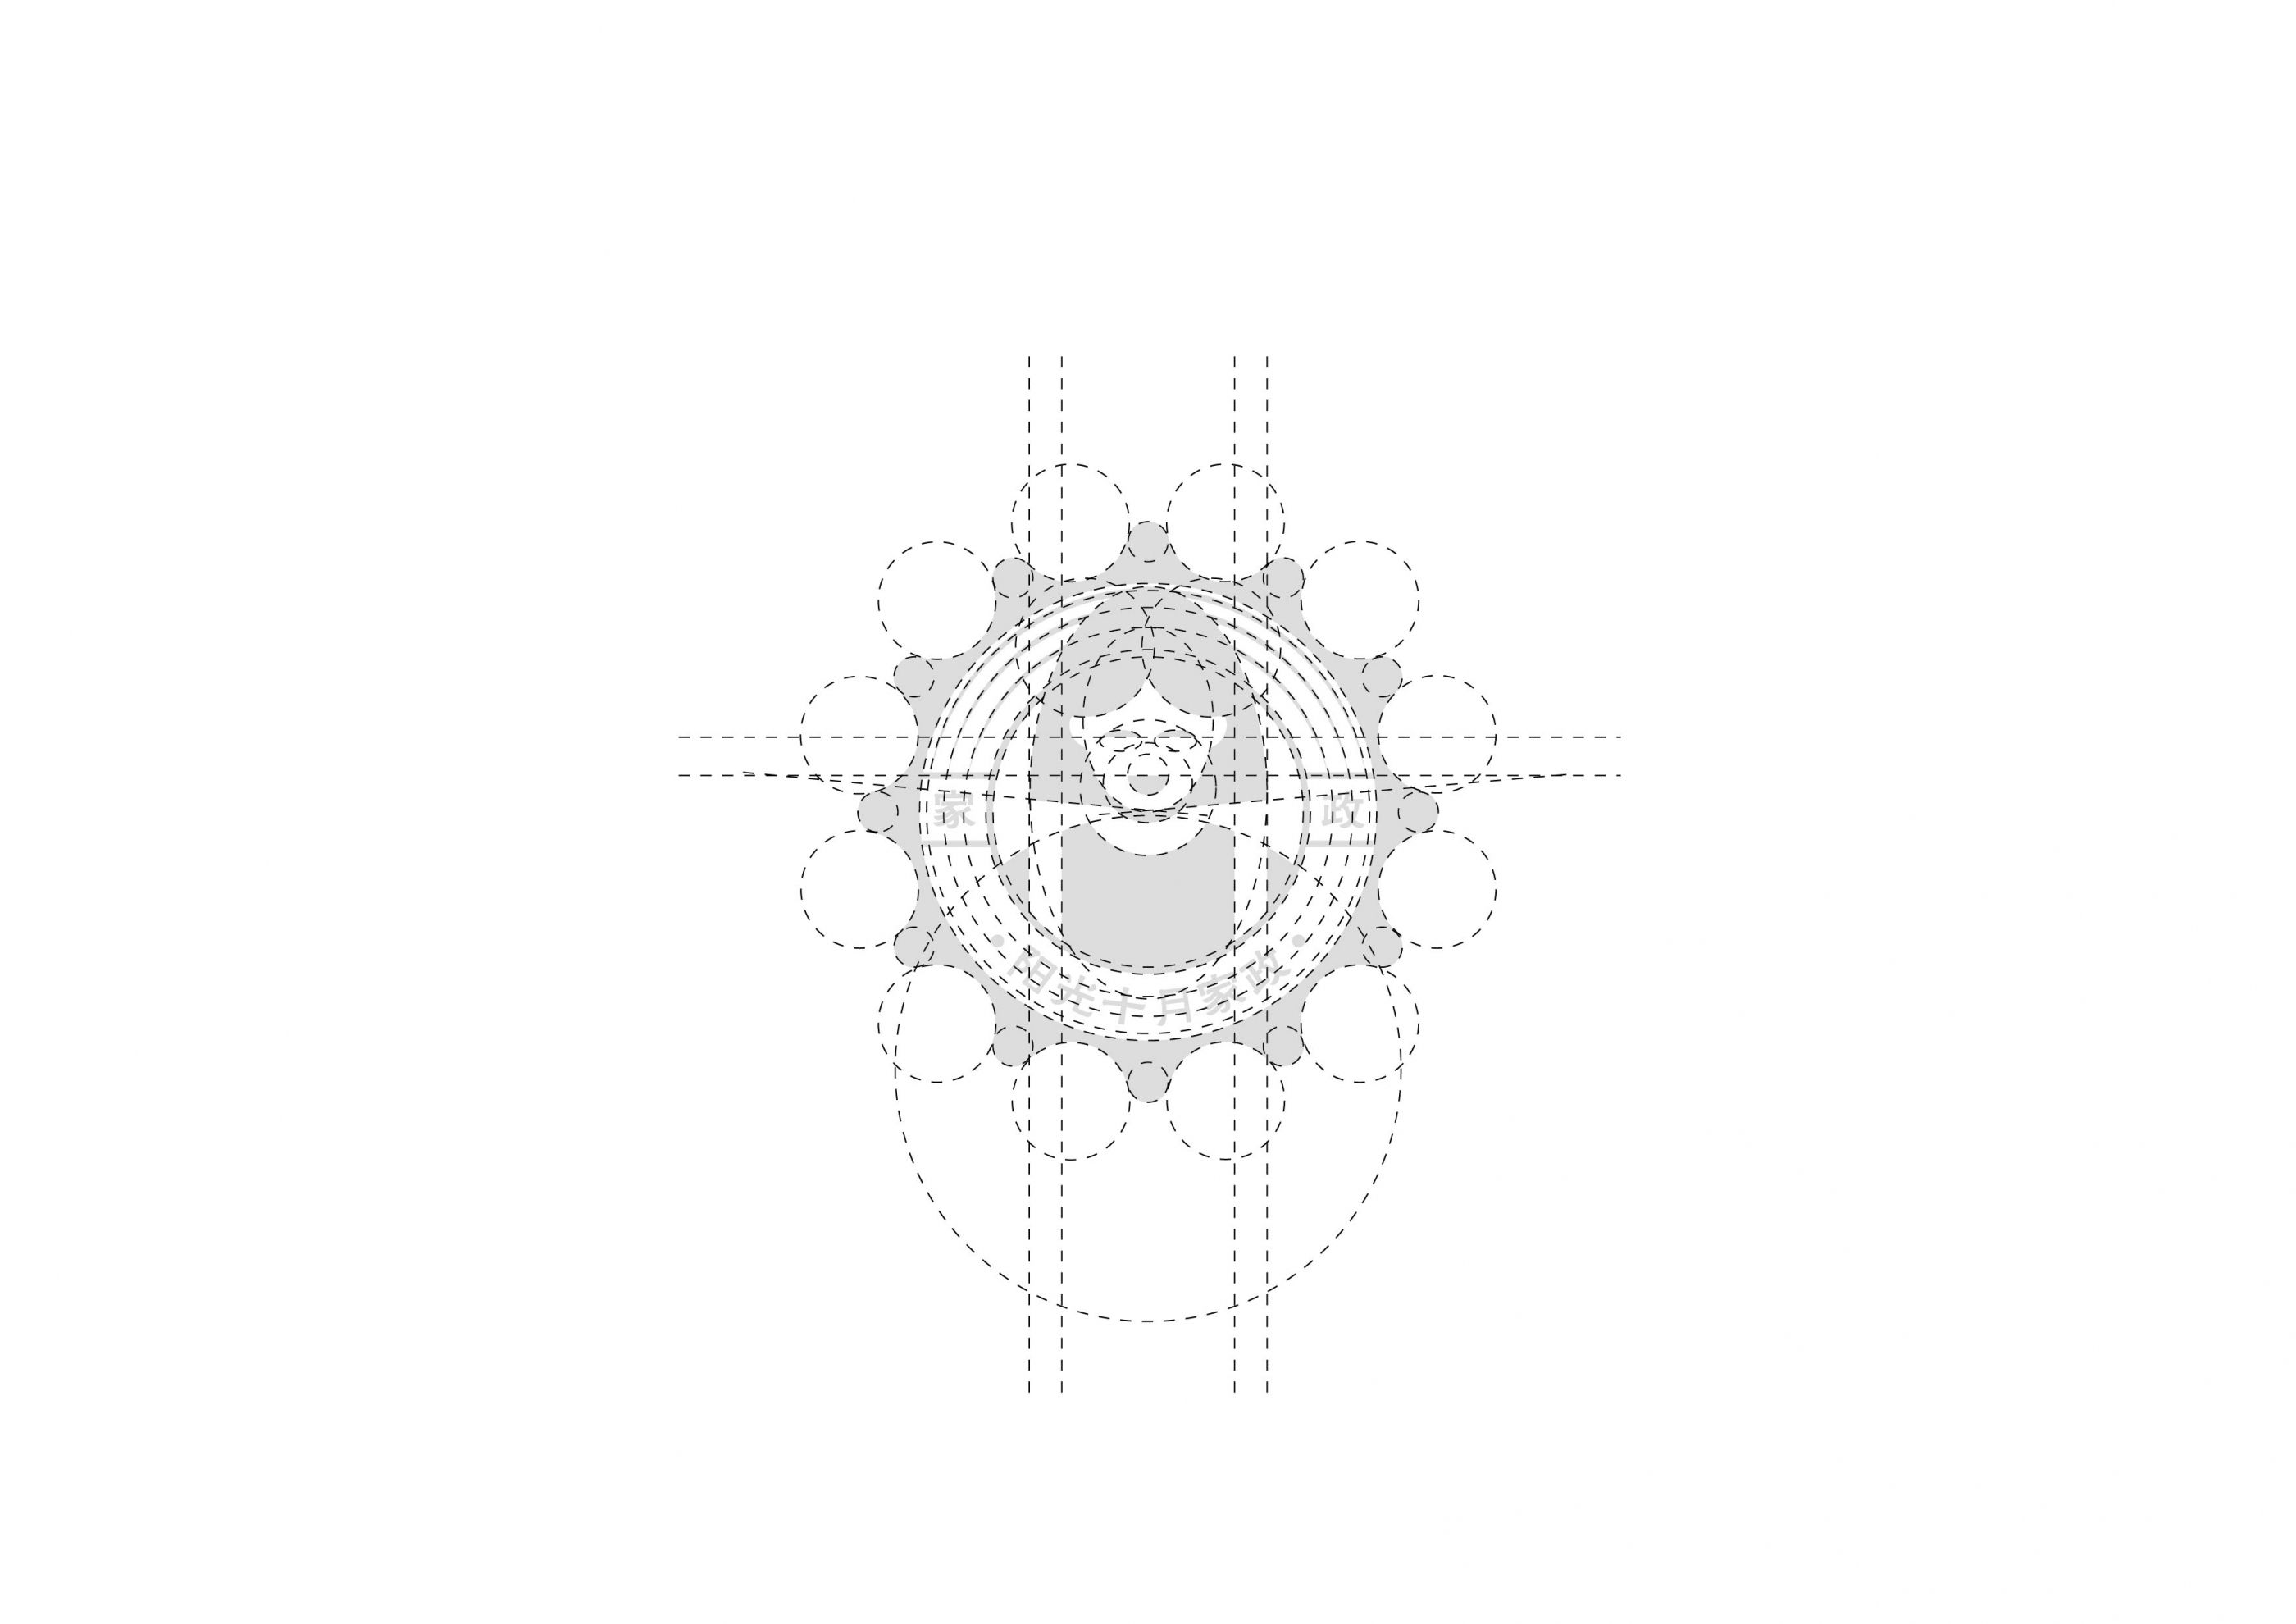 阳光十月家政品牌logo设计 飞特网 原创LOGO设计